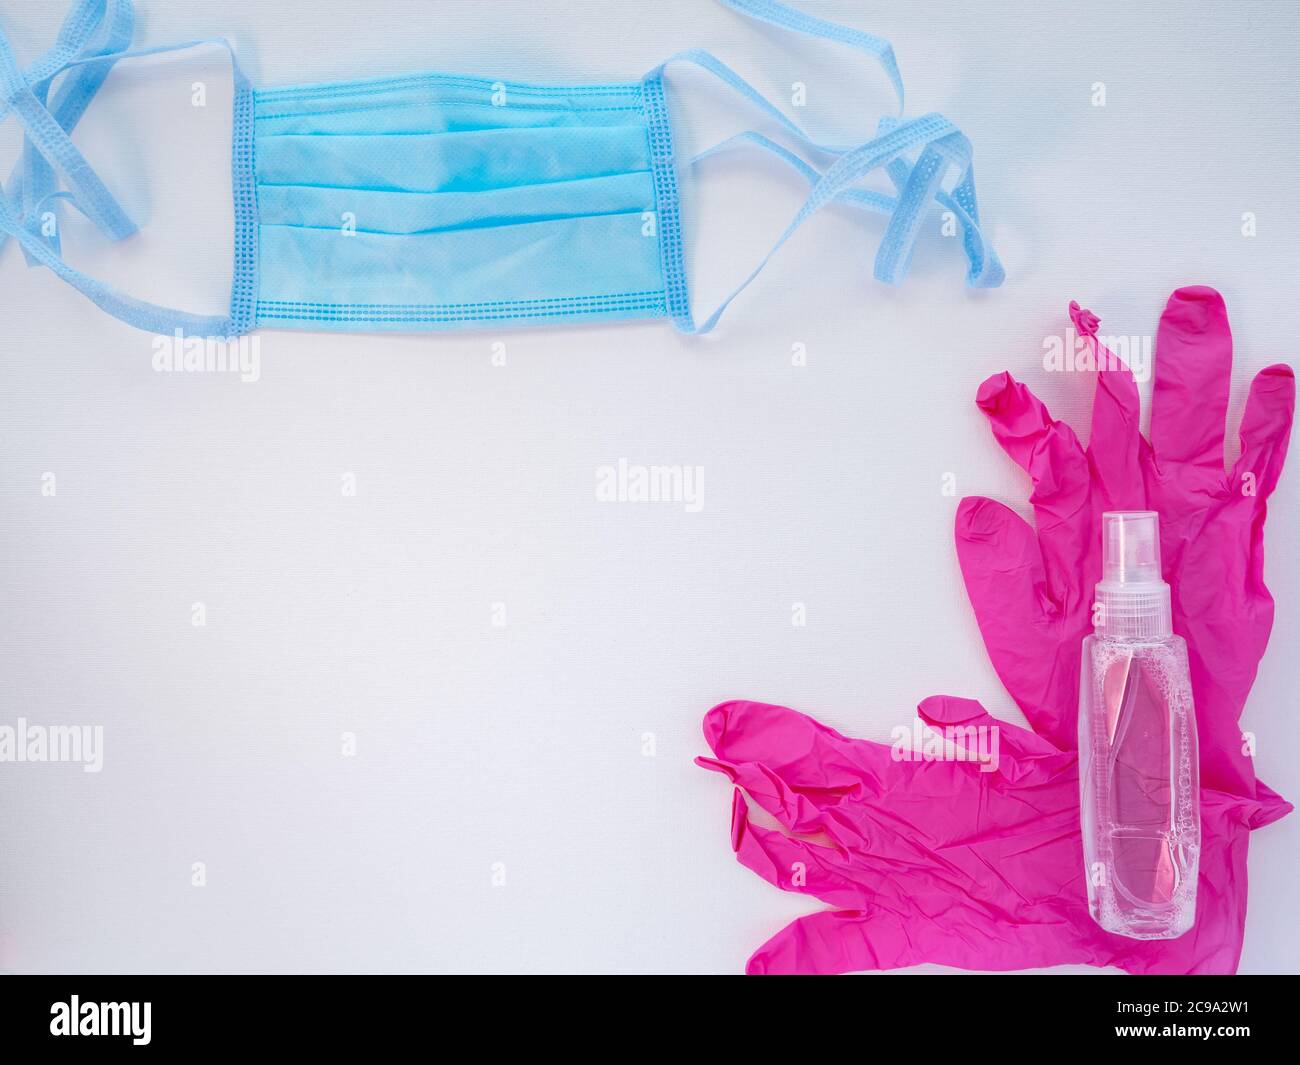 Máscara facial médica protectora azul, un par de guantes de látex rosa y una botella de desinfectante de manos sobre fondo blanco. Protección antiviral durante el covid. Foto de stock